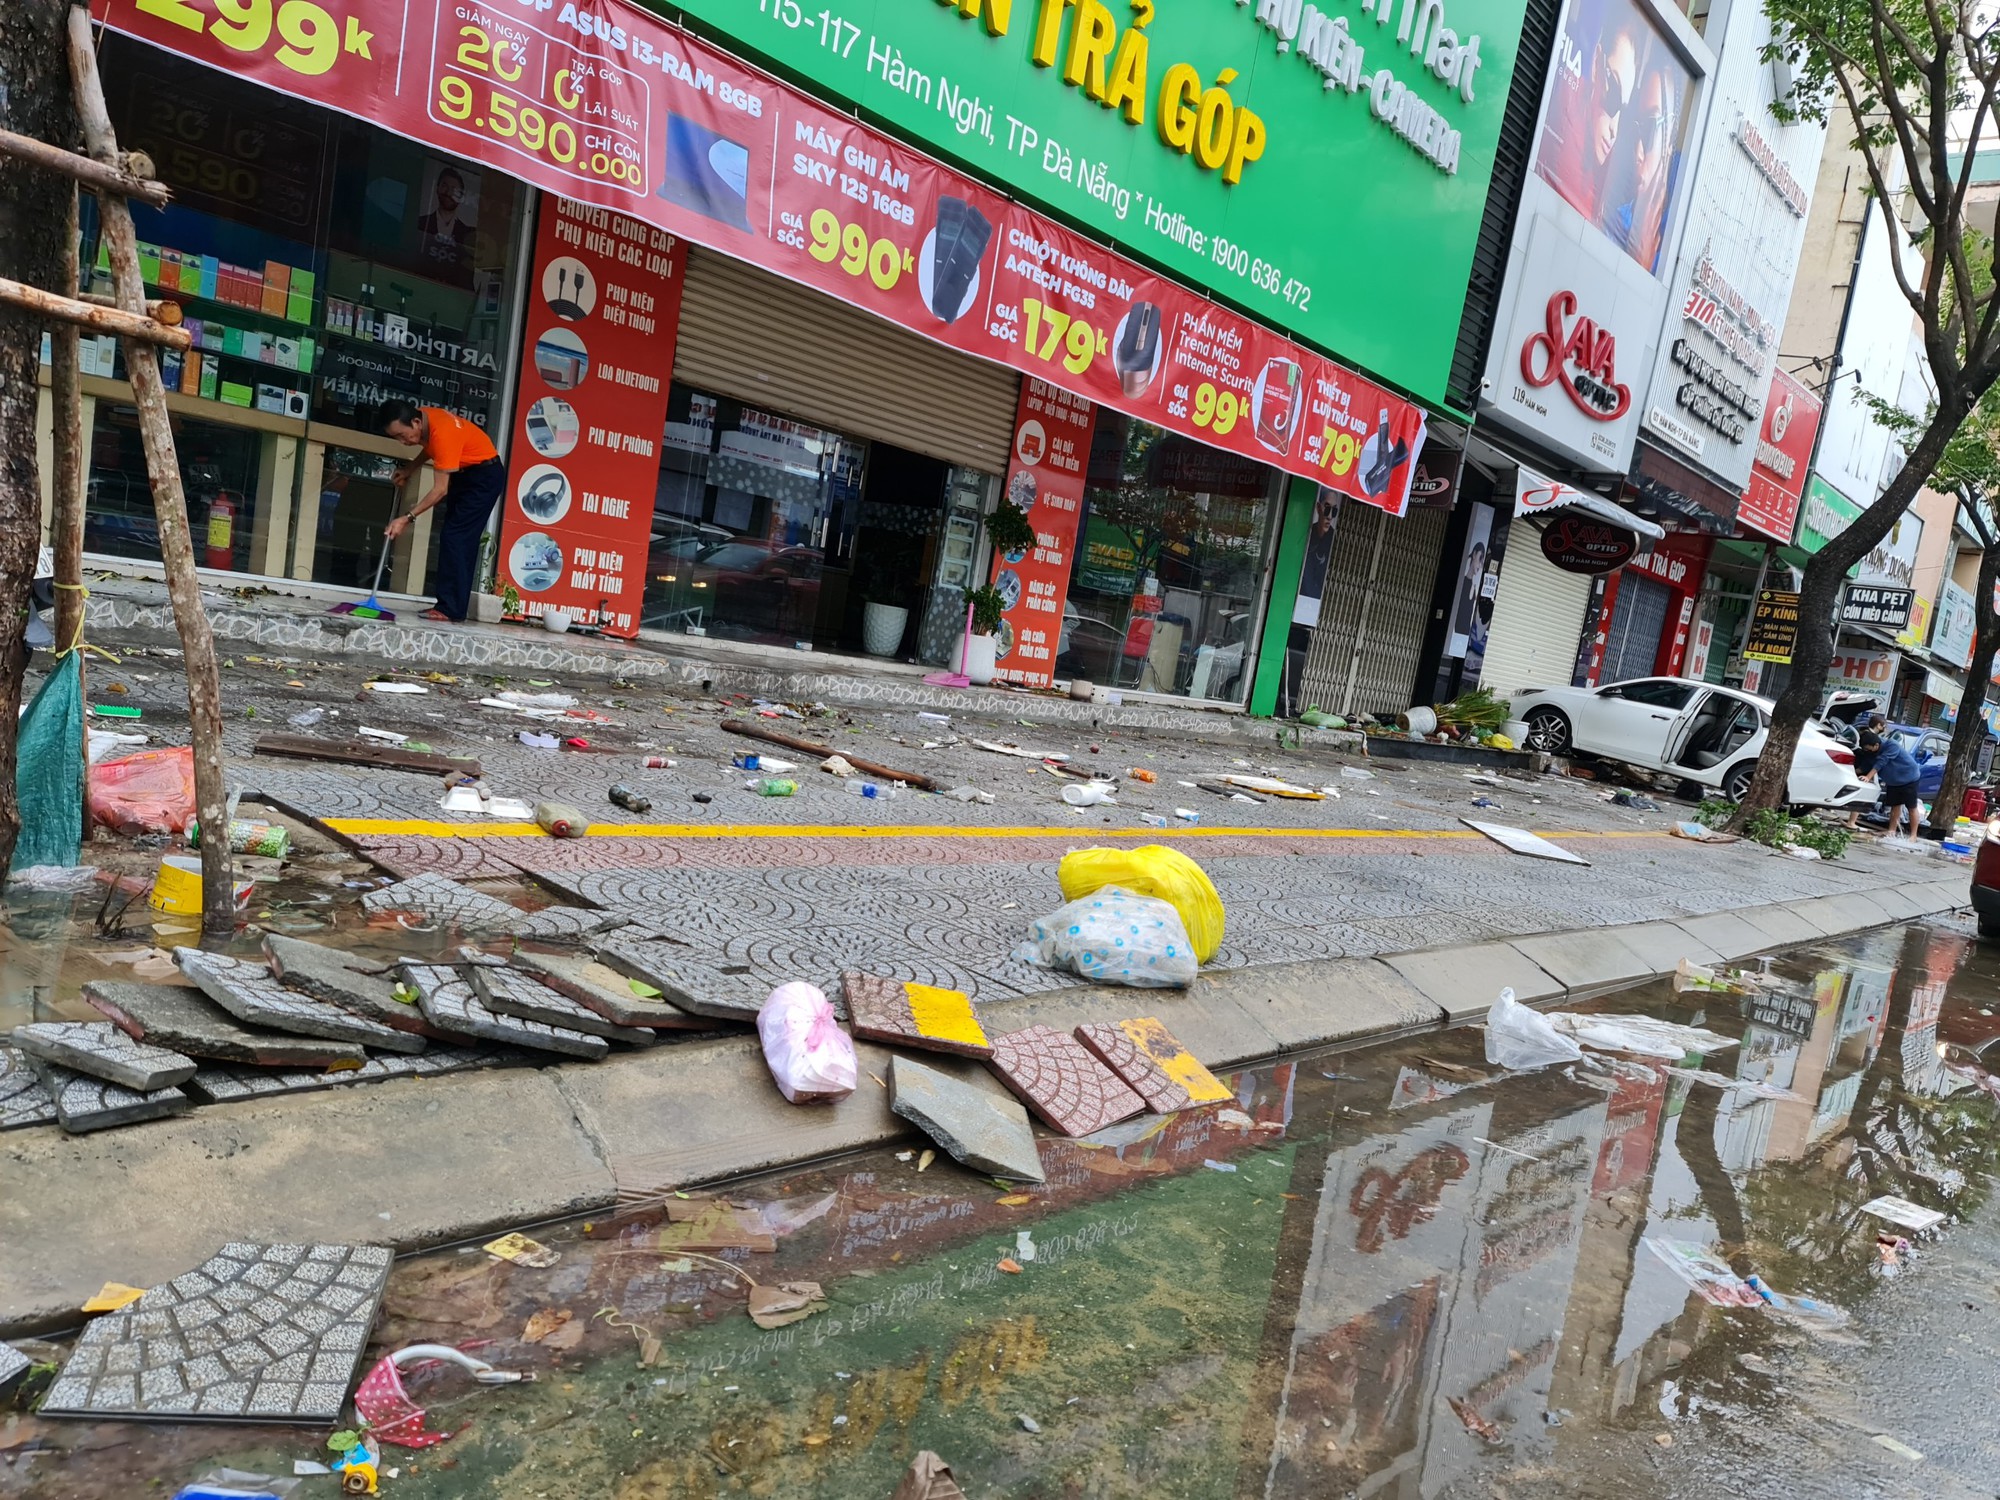 CLIP: Đà Nẵng sau trận mưa ngập lịch sử: Đường phố xơ xác, xe chết máy nằm la liệt... - Ảnh 10.